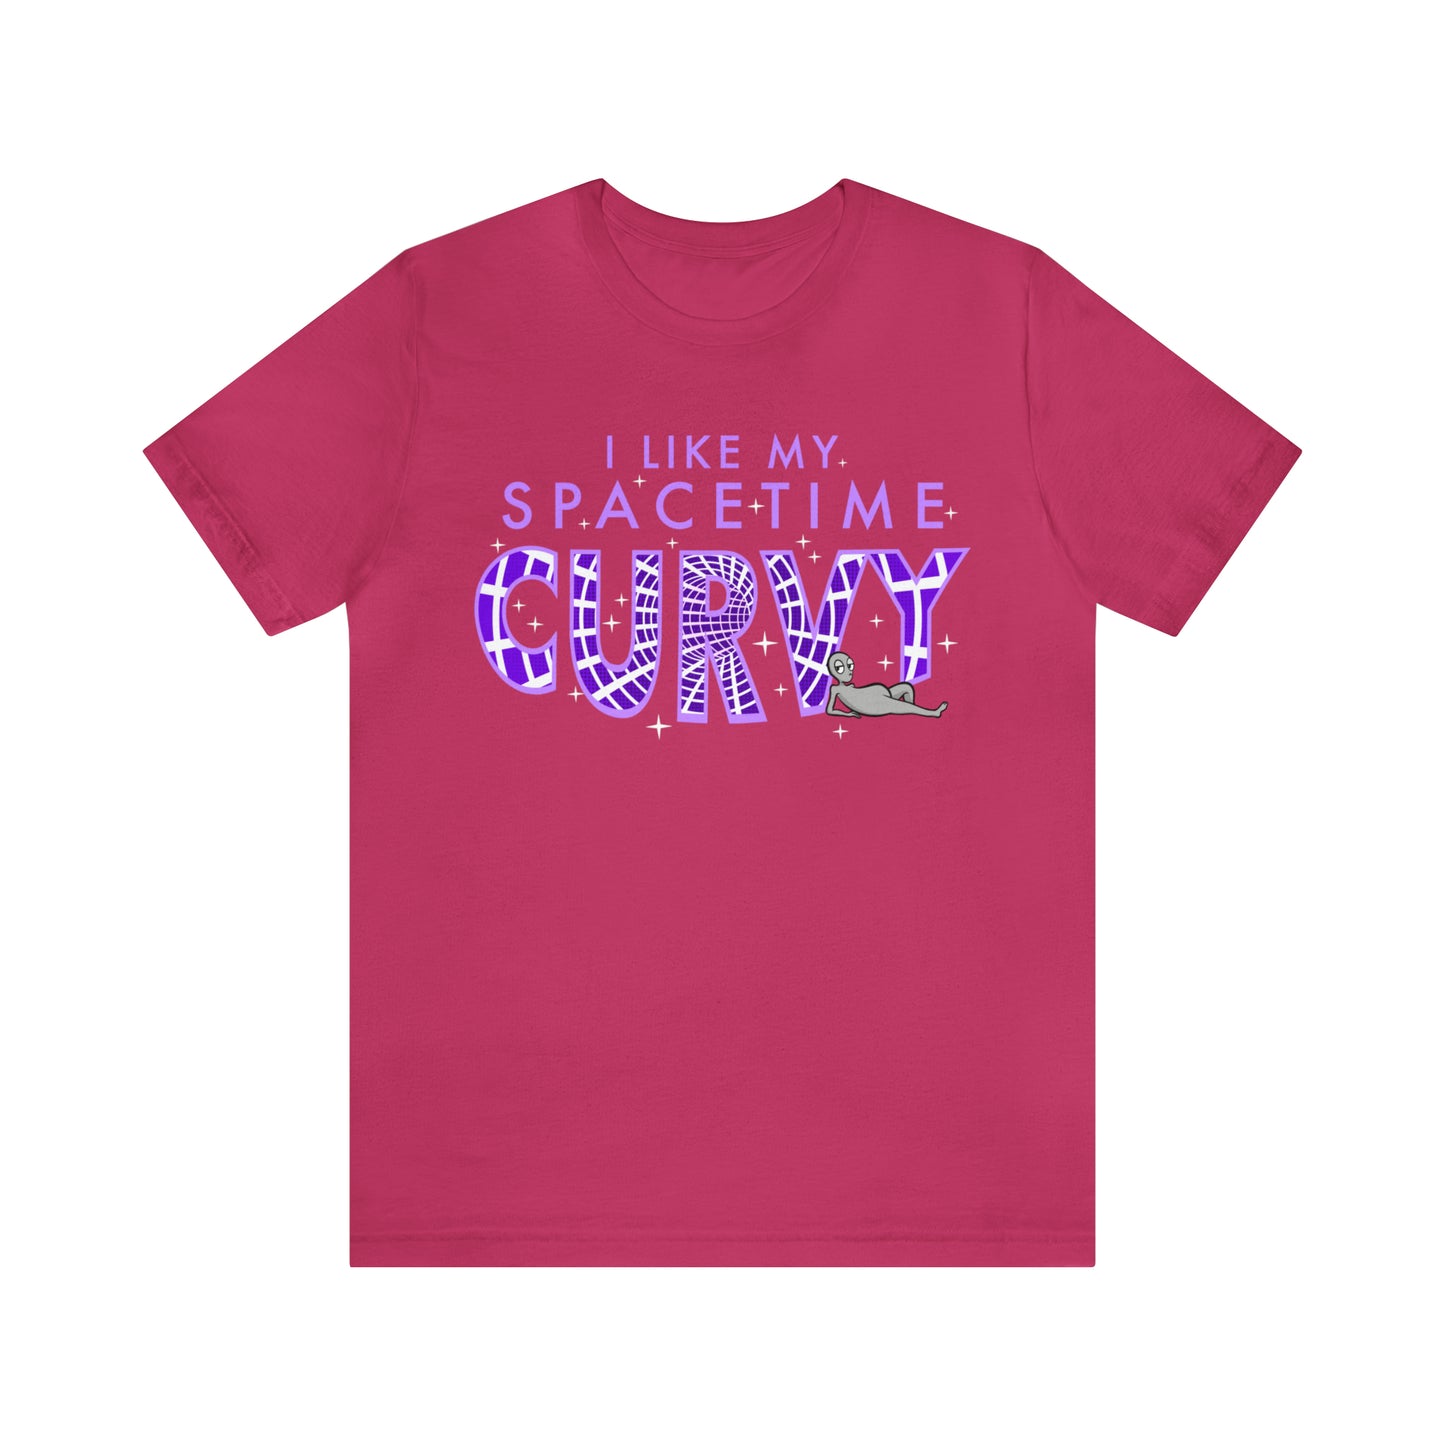 "Spacetime" - Unisex Short Sleeve Tee